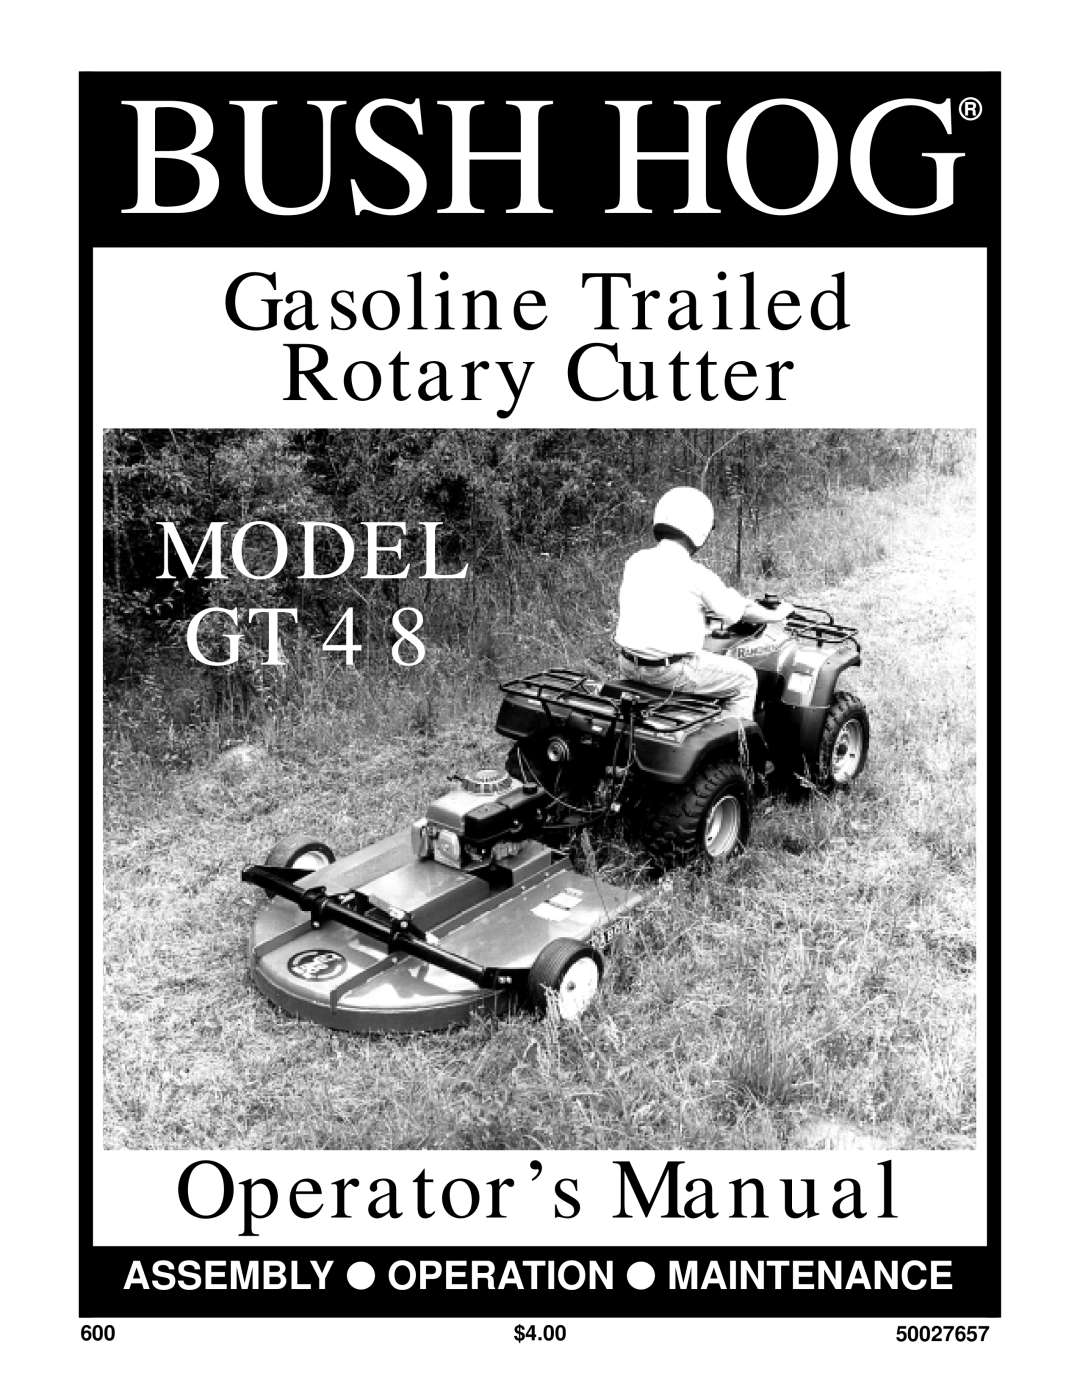 Bush Hog GT 48 manual $4.00, 50027657, Bush Hog, Gasoline Trailed Rotary Cutter, Model Gt, Operator’s Manual 